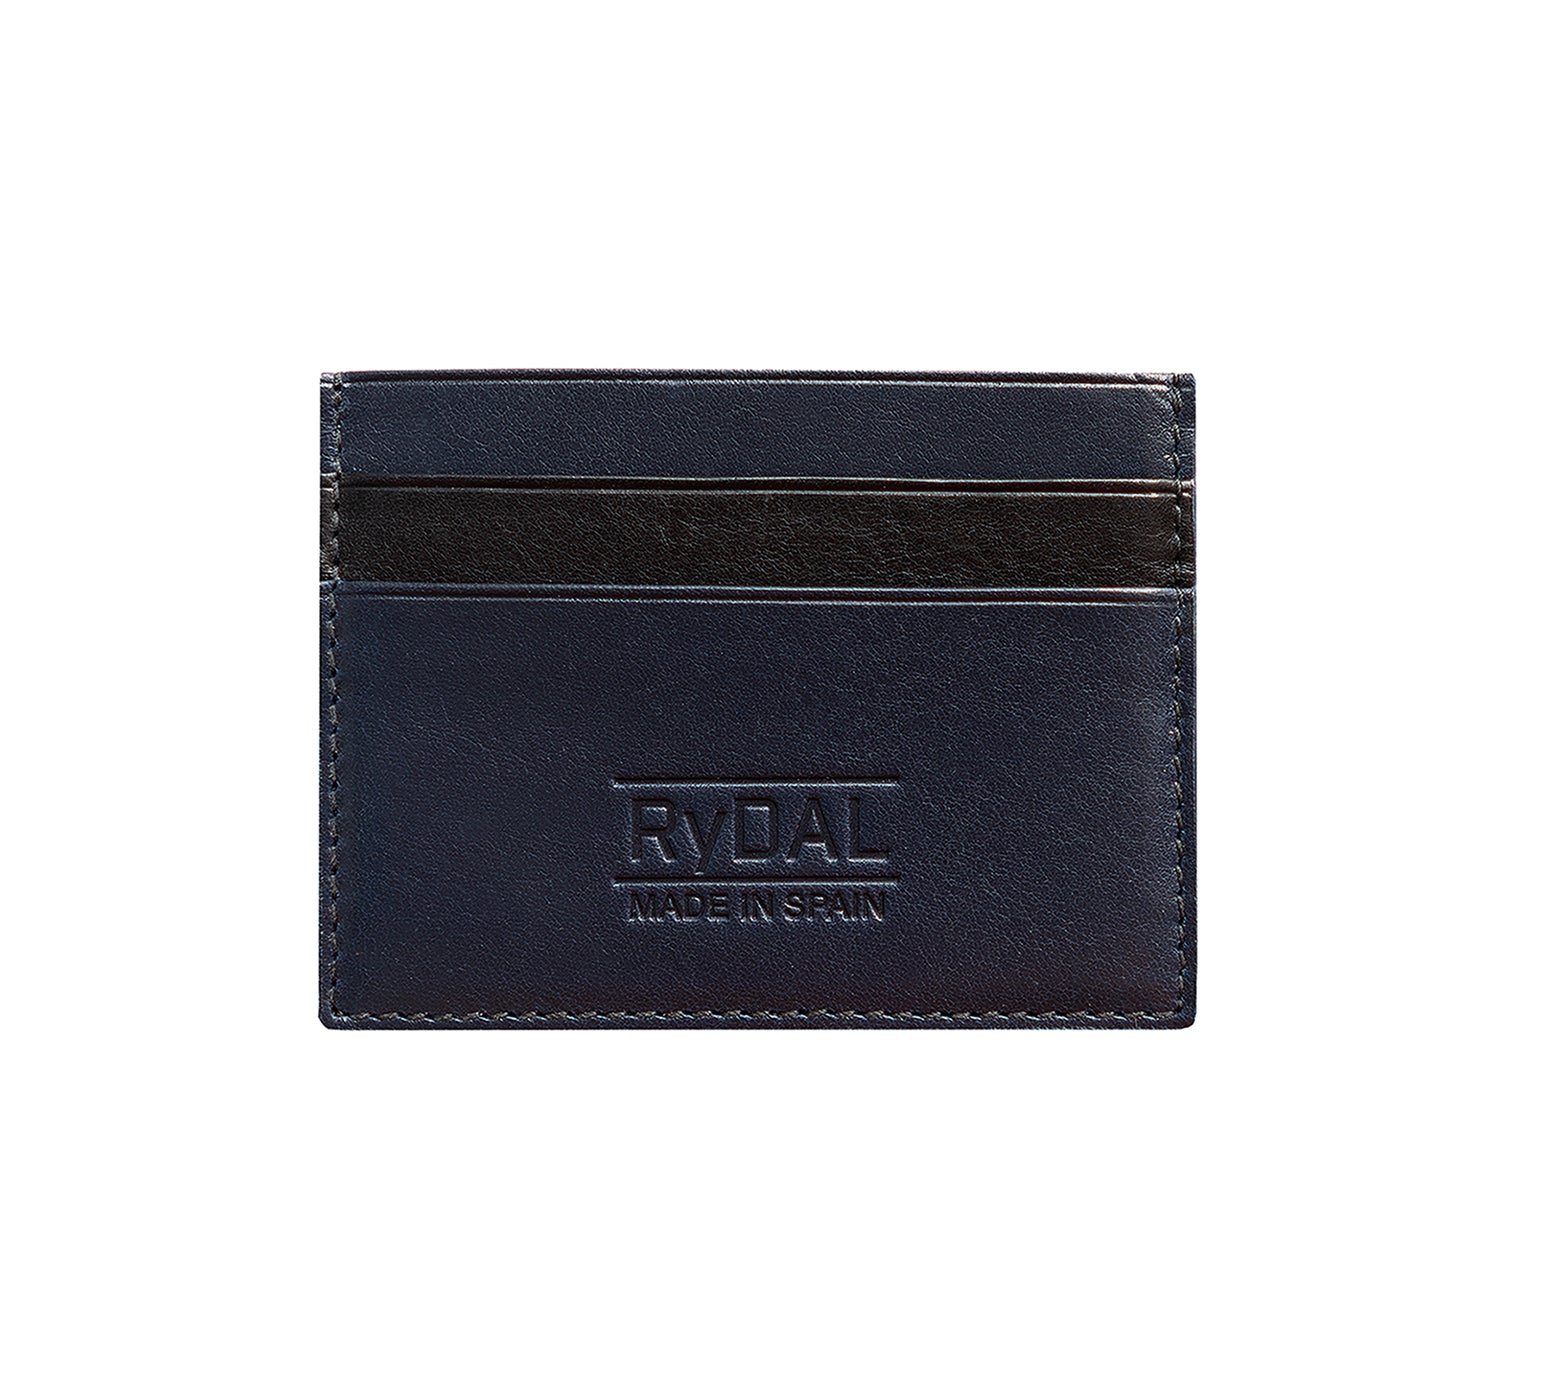 Mens Leather Card Holder in 'Royal Blue/Black'.